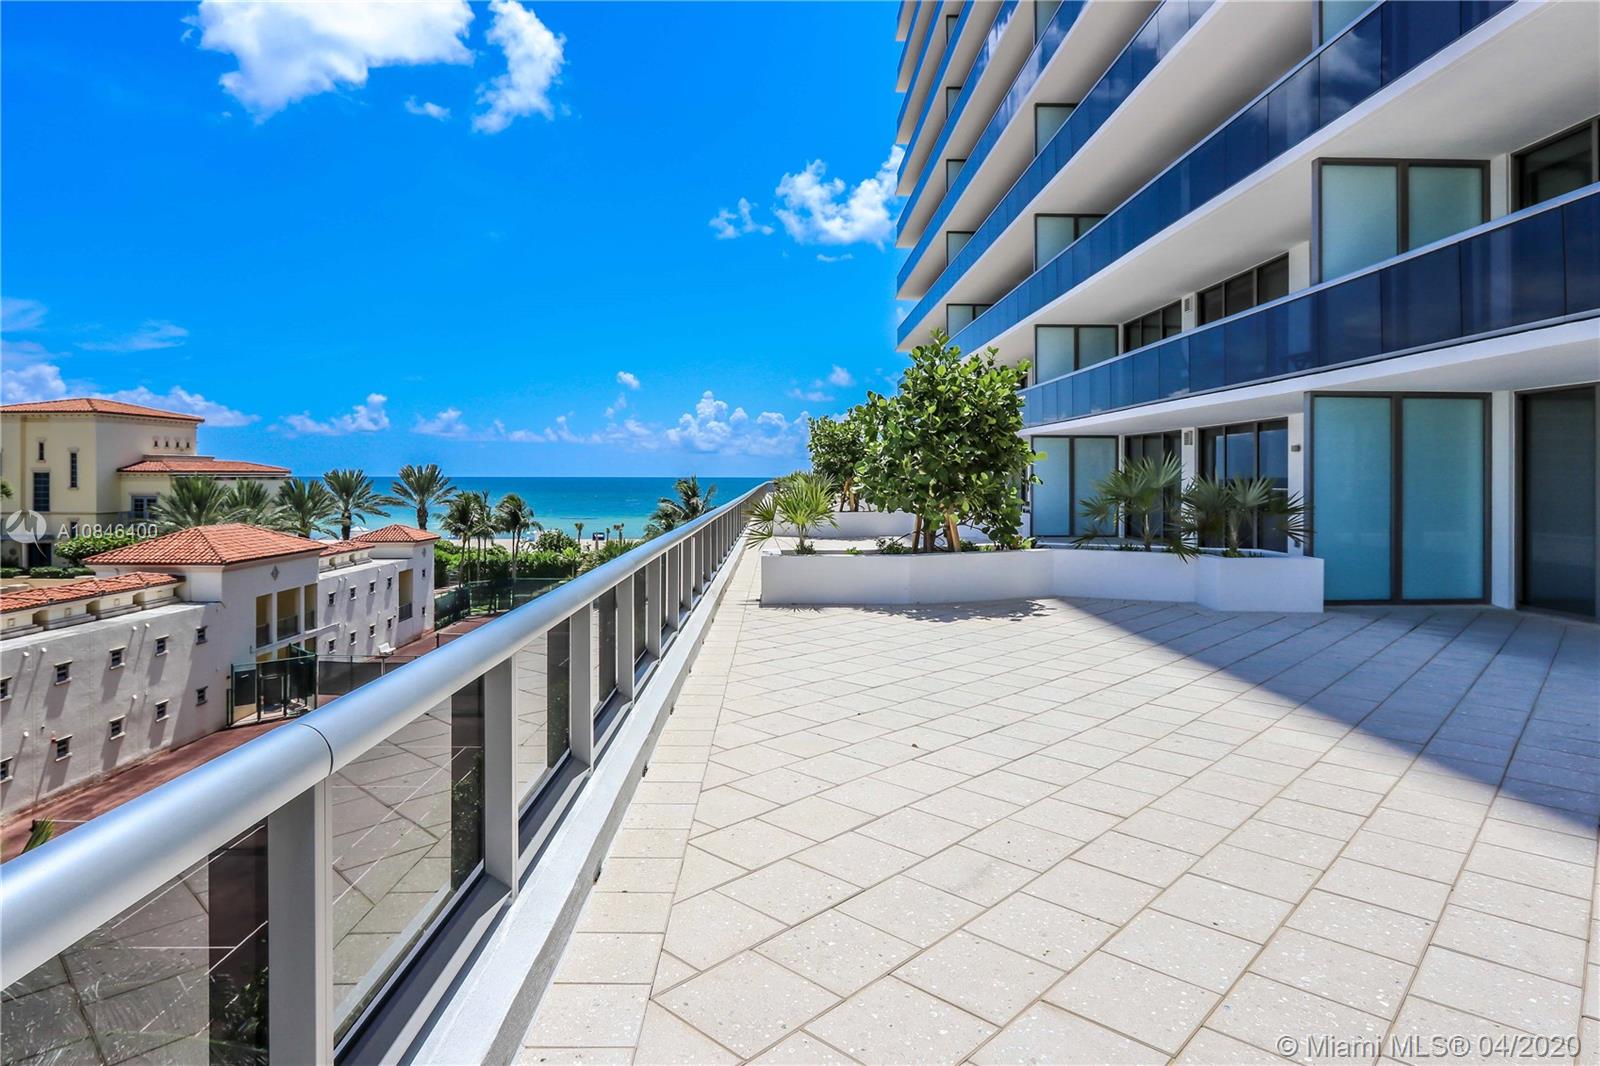 Photo 2 of MEi Condominium Apt 507 in Miami Beach - MLS A10846400